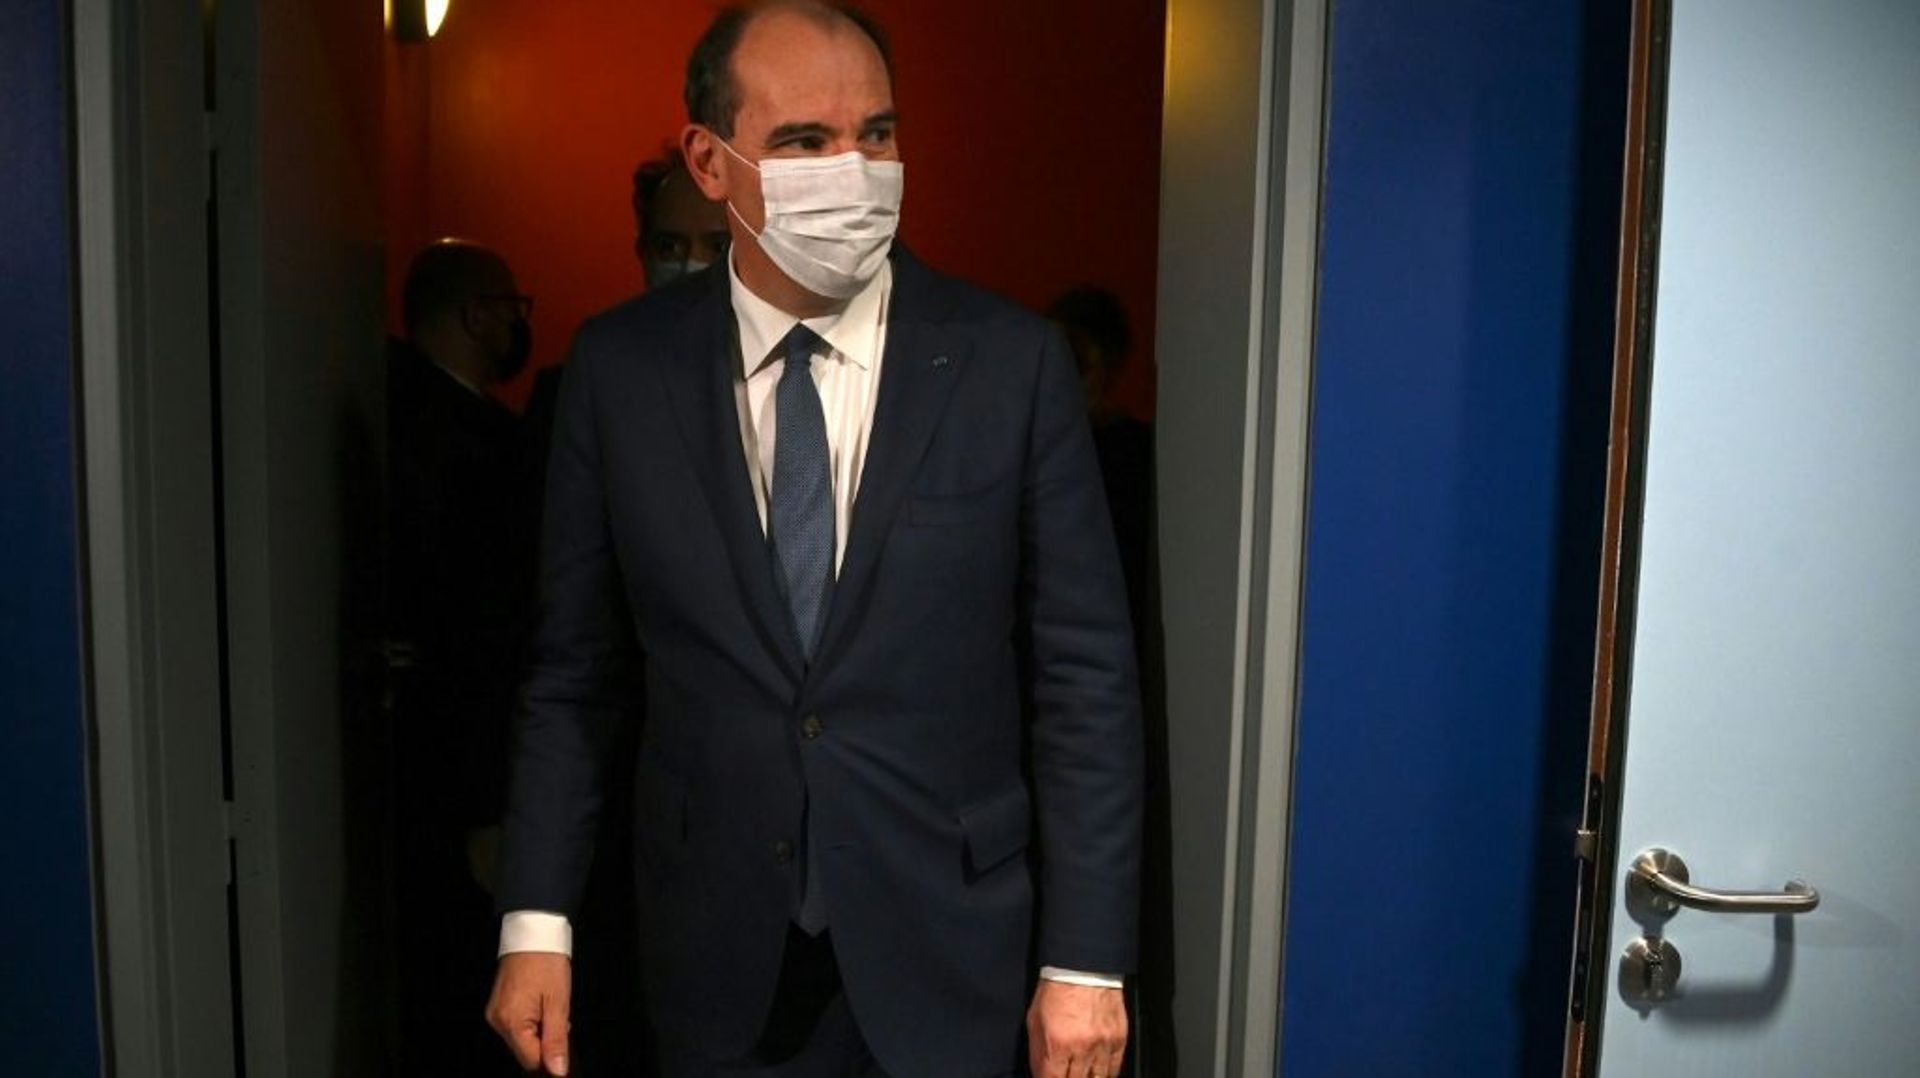 Le Premier ministre Jean Castex visite le "Nouvel hôpital civil" (NHC) de Strasbourg, le 10 décembre 2021